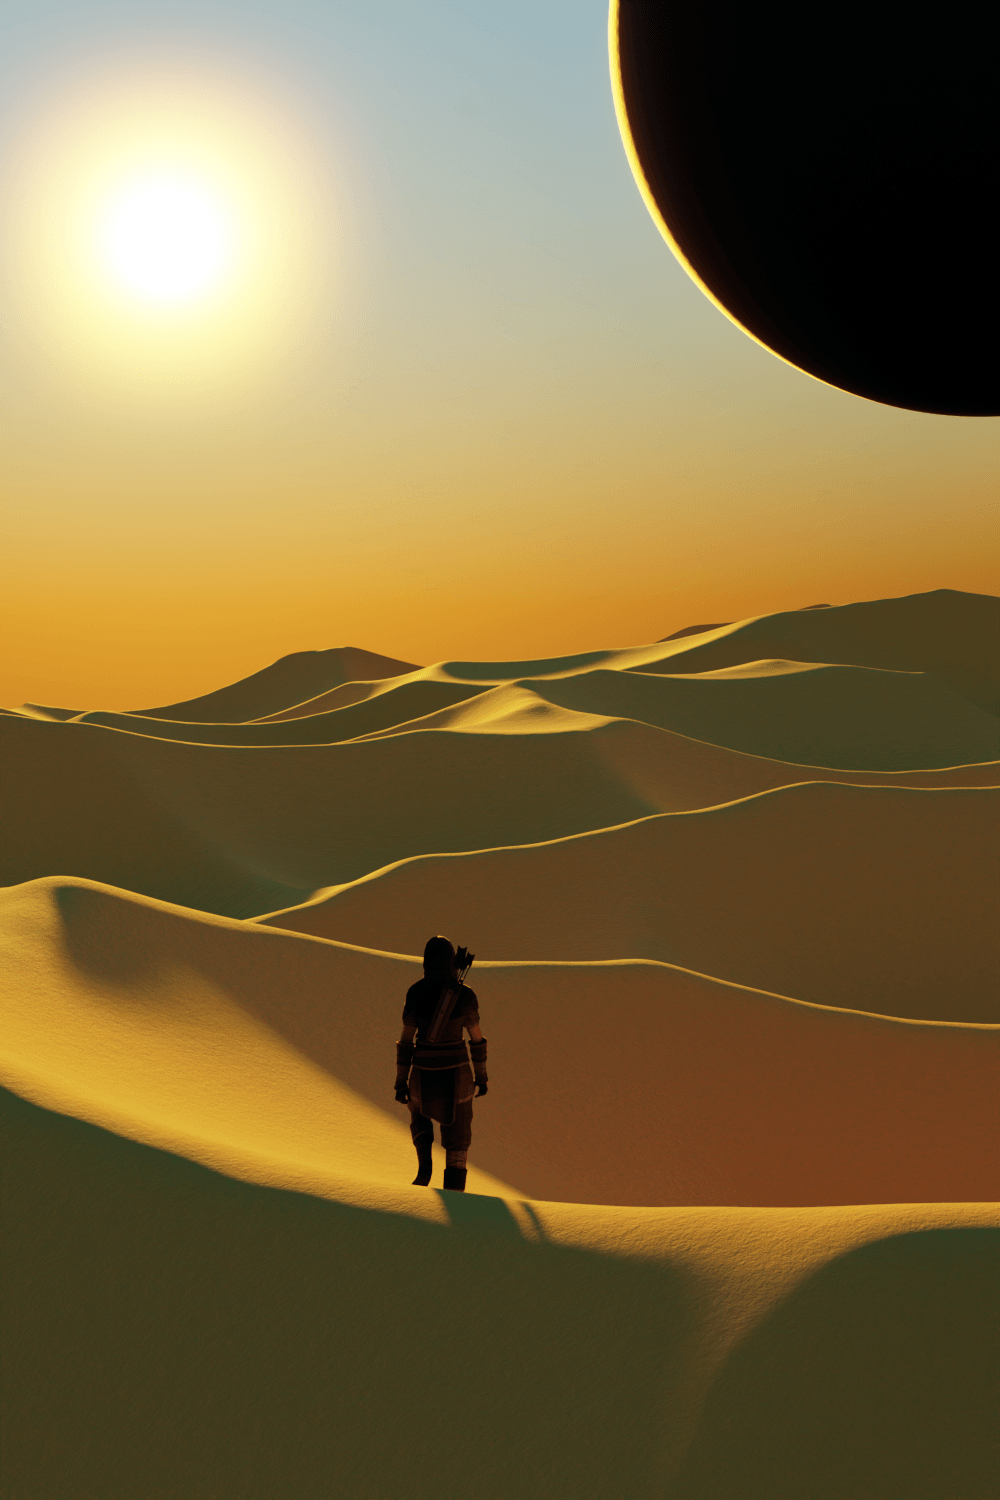 blender 3d modeling Render dune Digital Art  arrakis frank herbert sci-fi desert Landscape